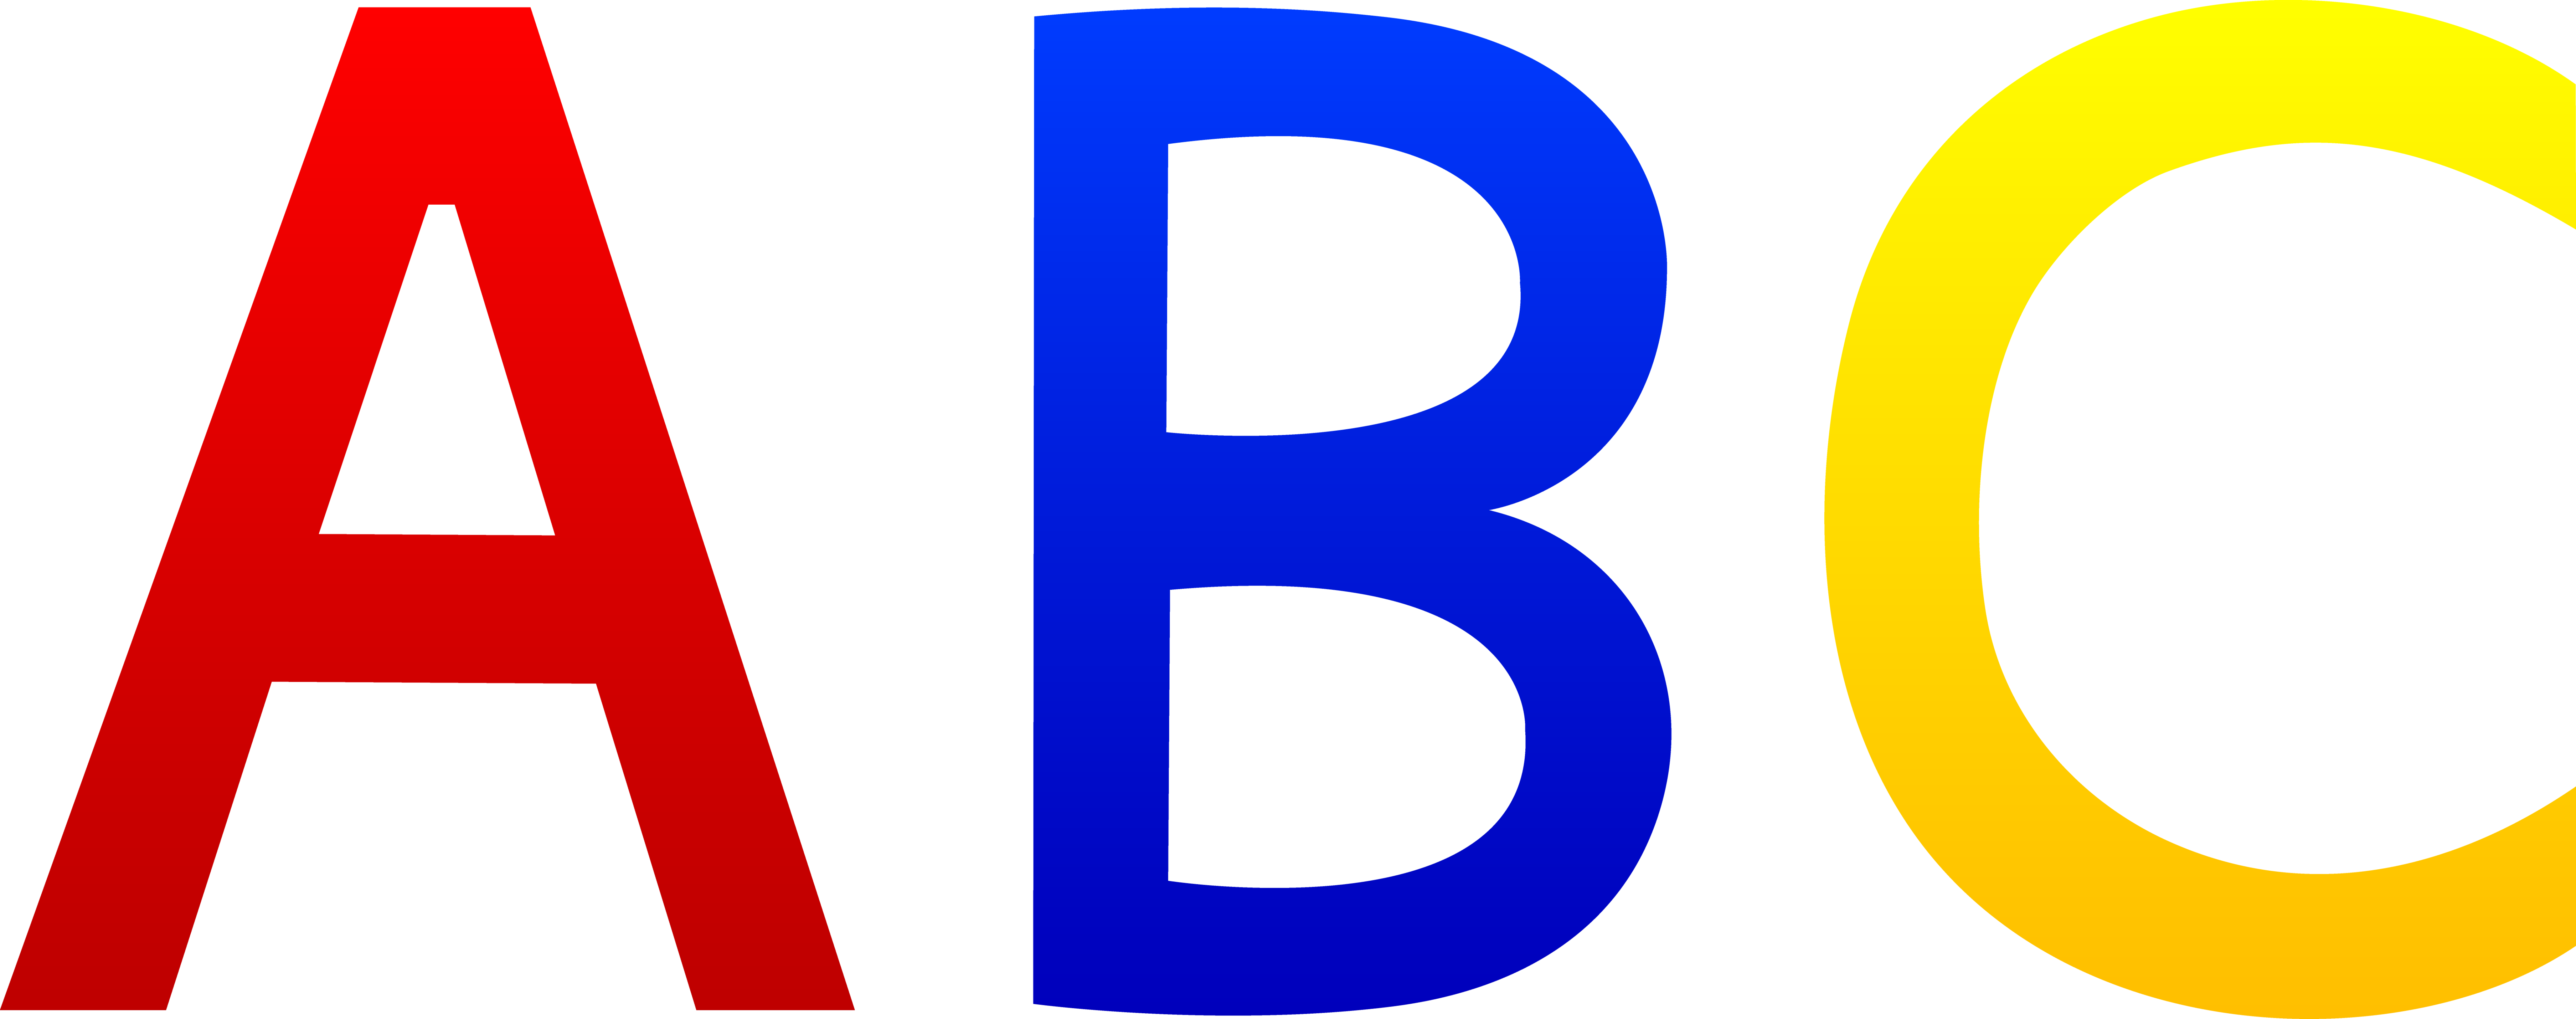 Alphabet Letters Clip Art Words